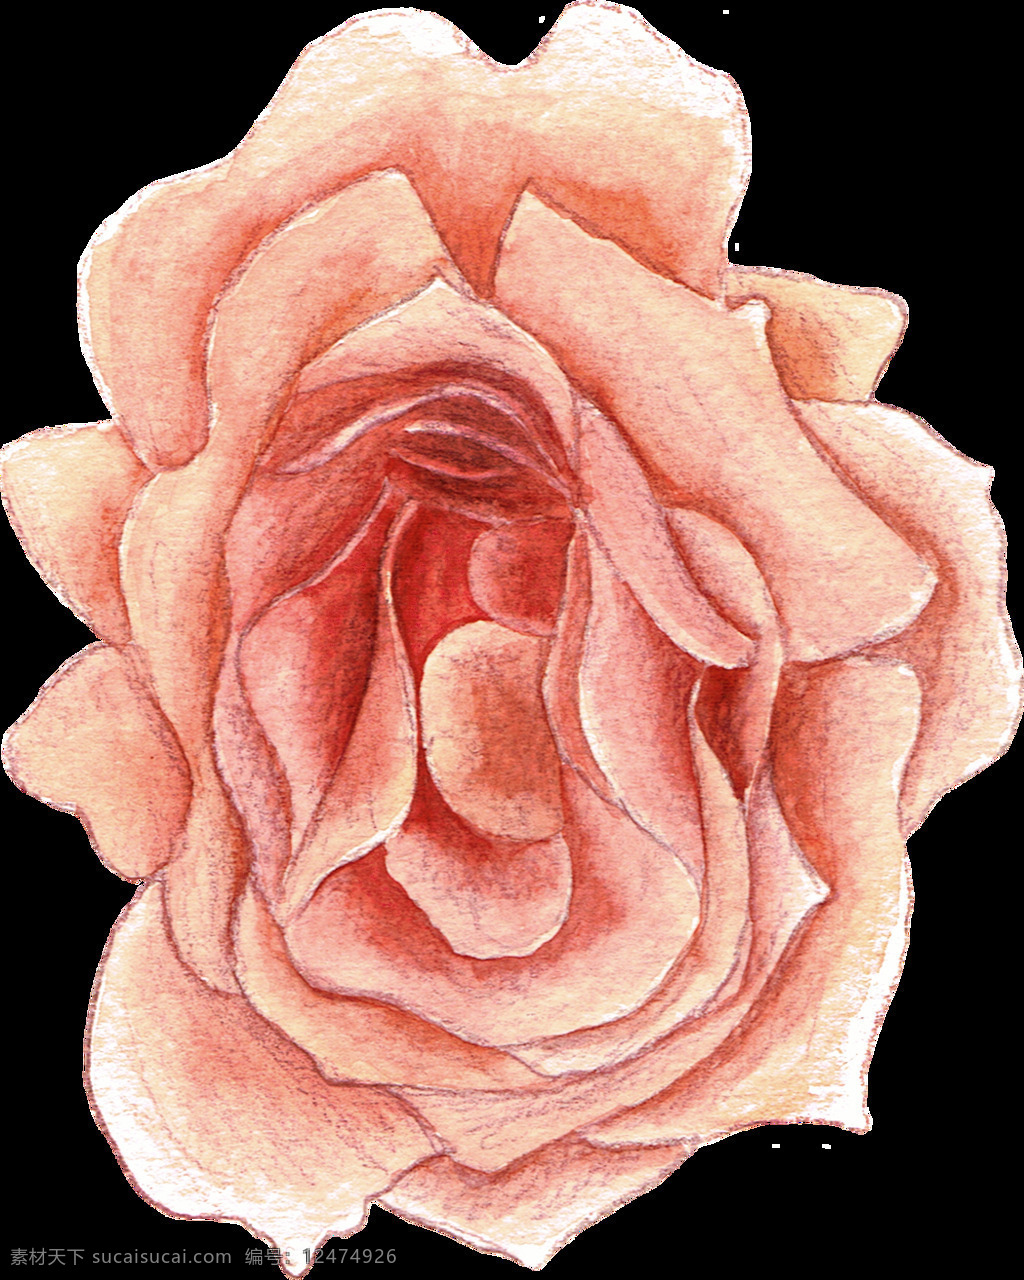 彩 铅 手绘 花朵 植物 花朵植物 手绘花朵 彩铅 彩铅植物 手绘插画 唯美 花卉花朵 手绘植物 鲜花 花束